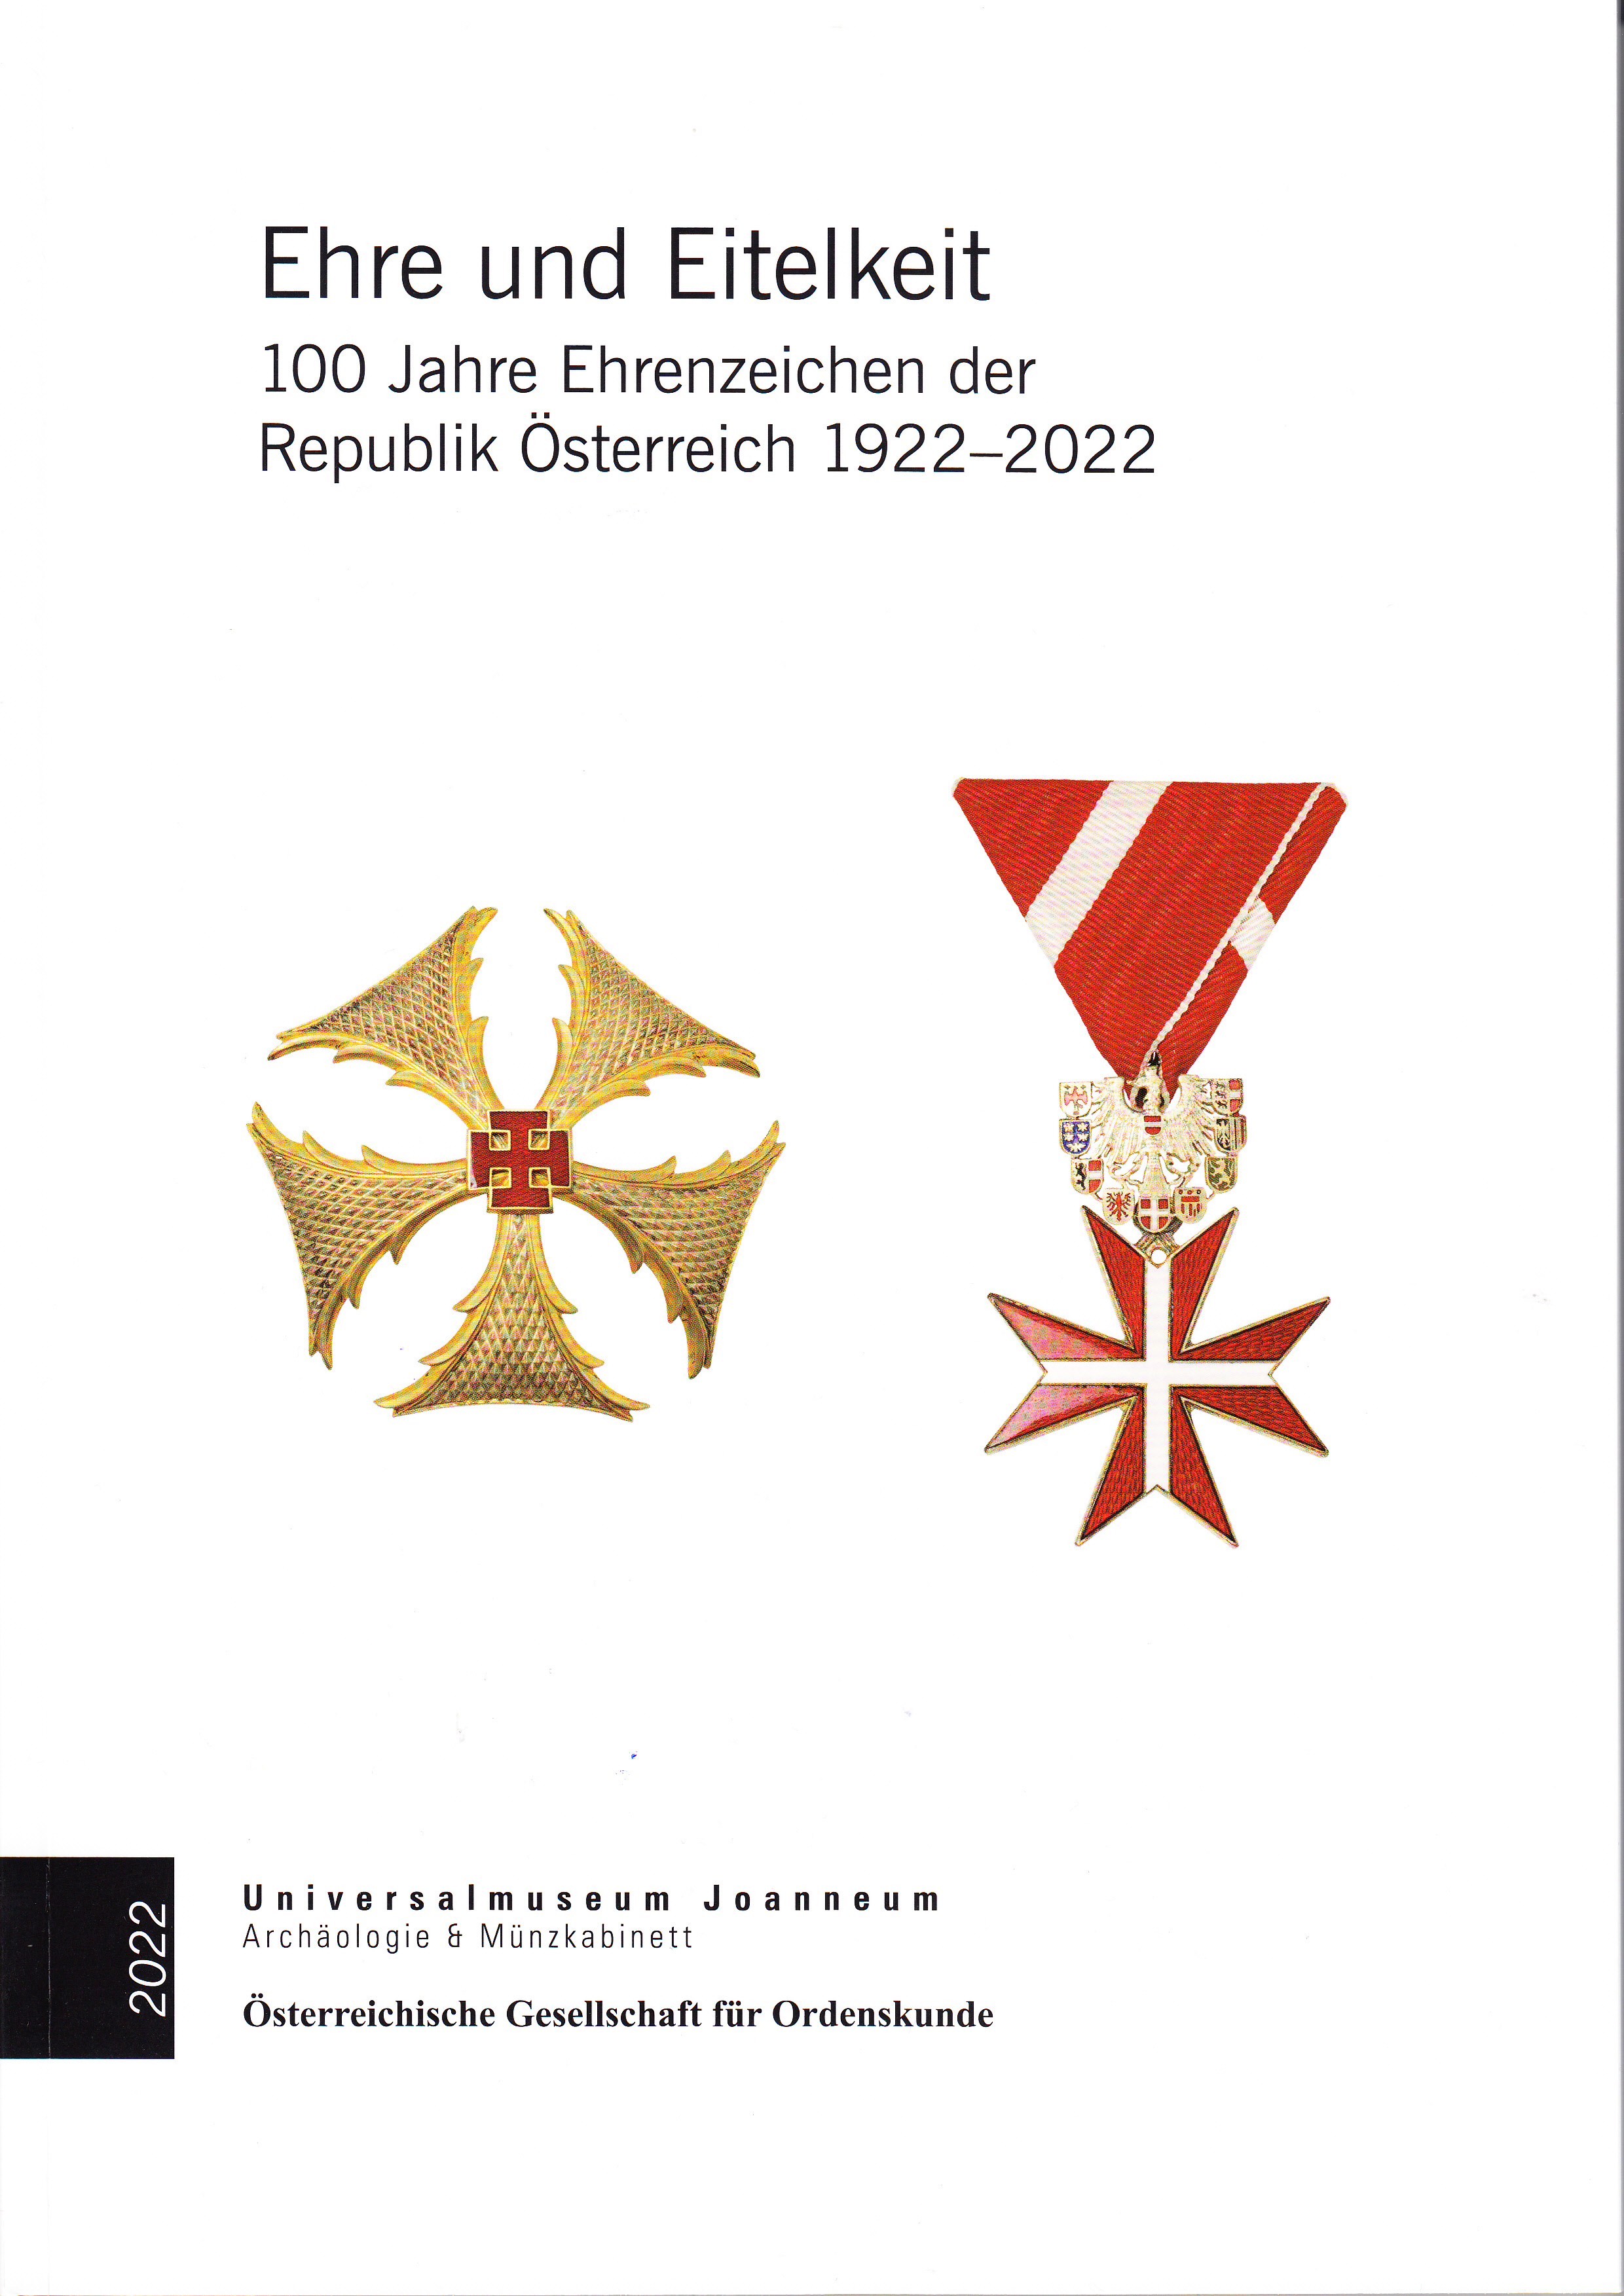 Ehre und Eitelkeit. 100 Jahre Ehrenzeichen der Republik Österreich 1922 - 2022